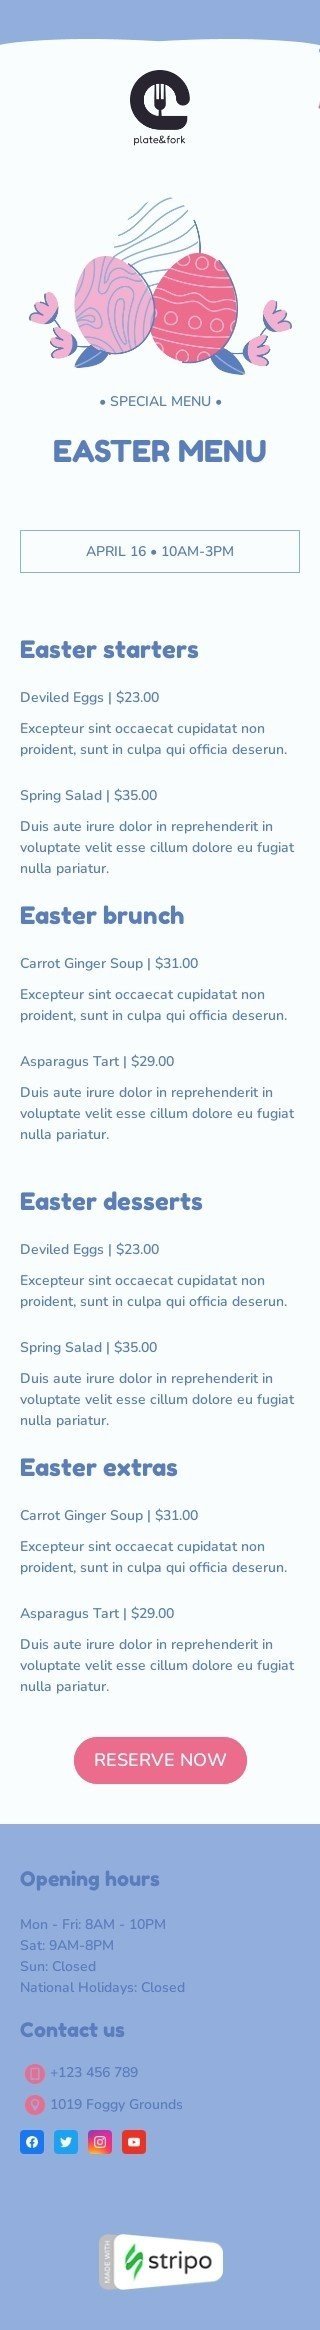 Plantilla de correo electrónico «Menú de Pascua» de Semana Santa para la industria de gastronomía Vista de móvil